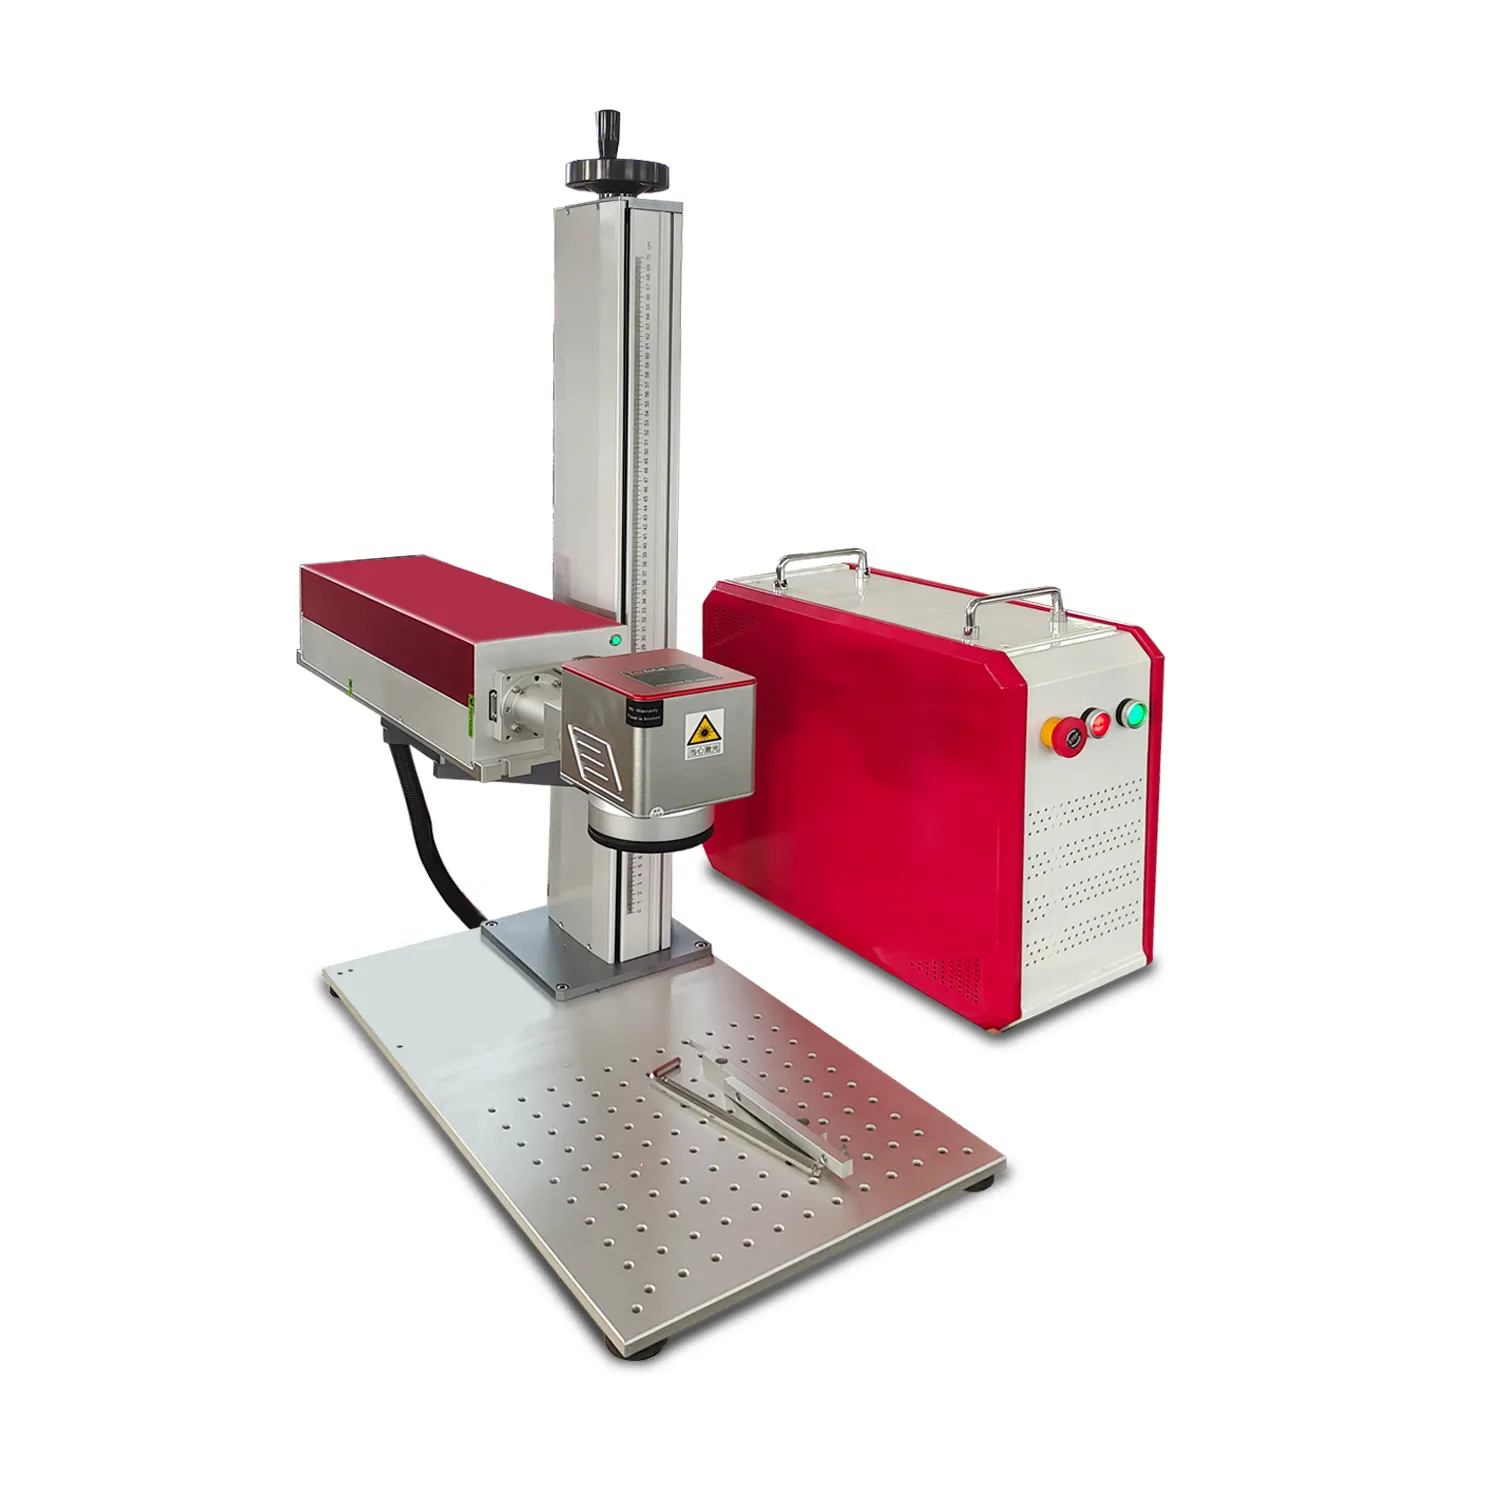 Горячая продажа ювелирных изделий 20 30 50 Вт волоконно-лазерная машина онлайн Лазерная печатная машина лазерная гравировальная машина для металла